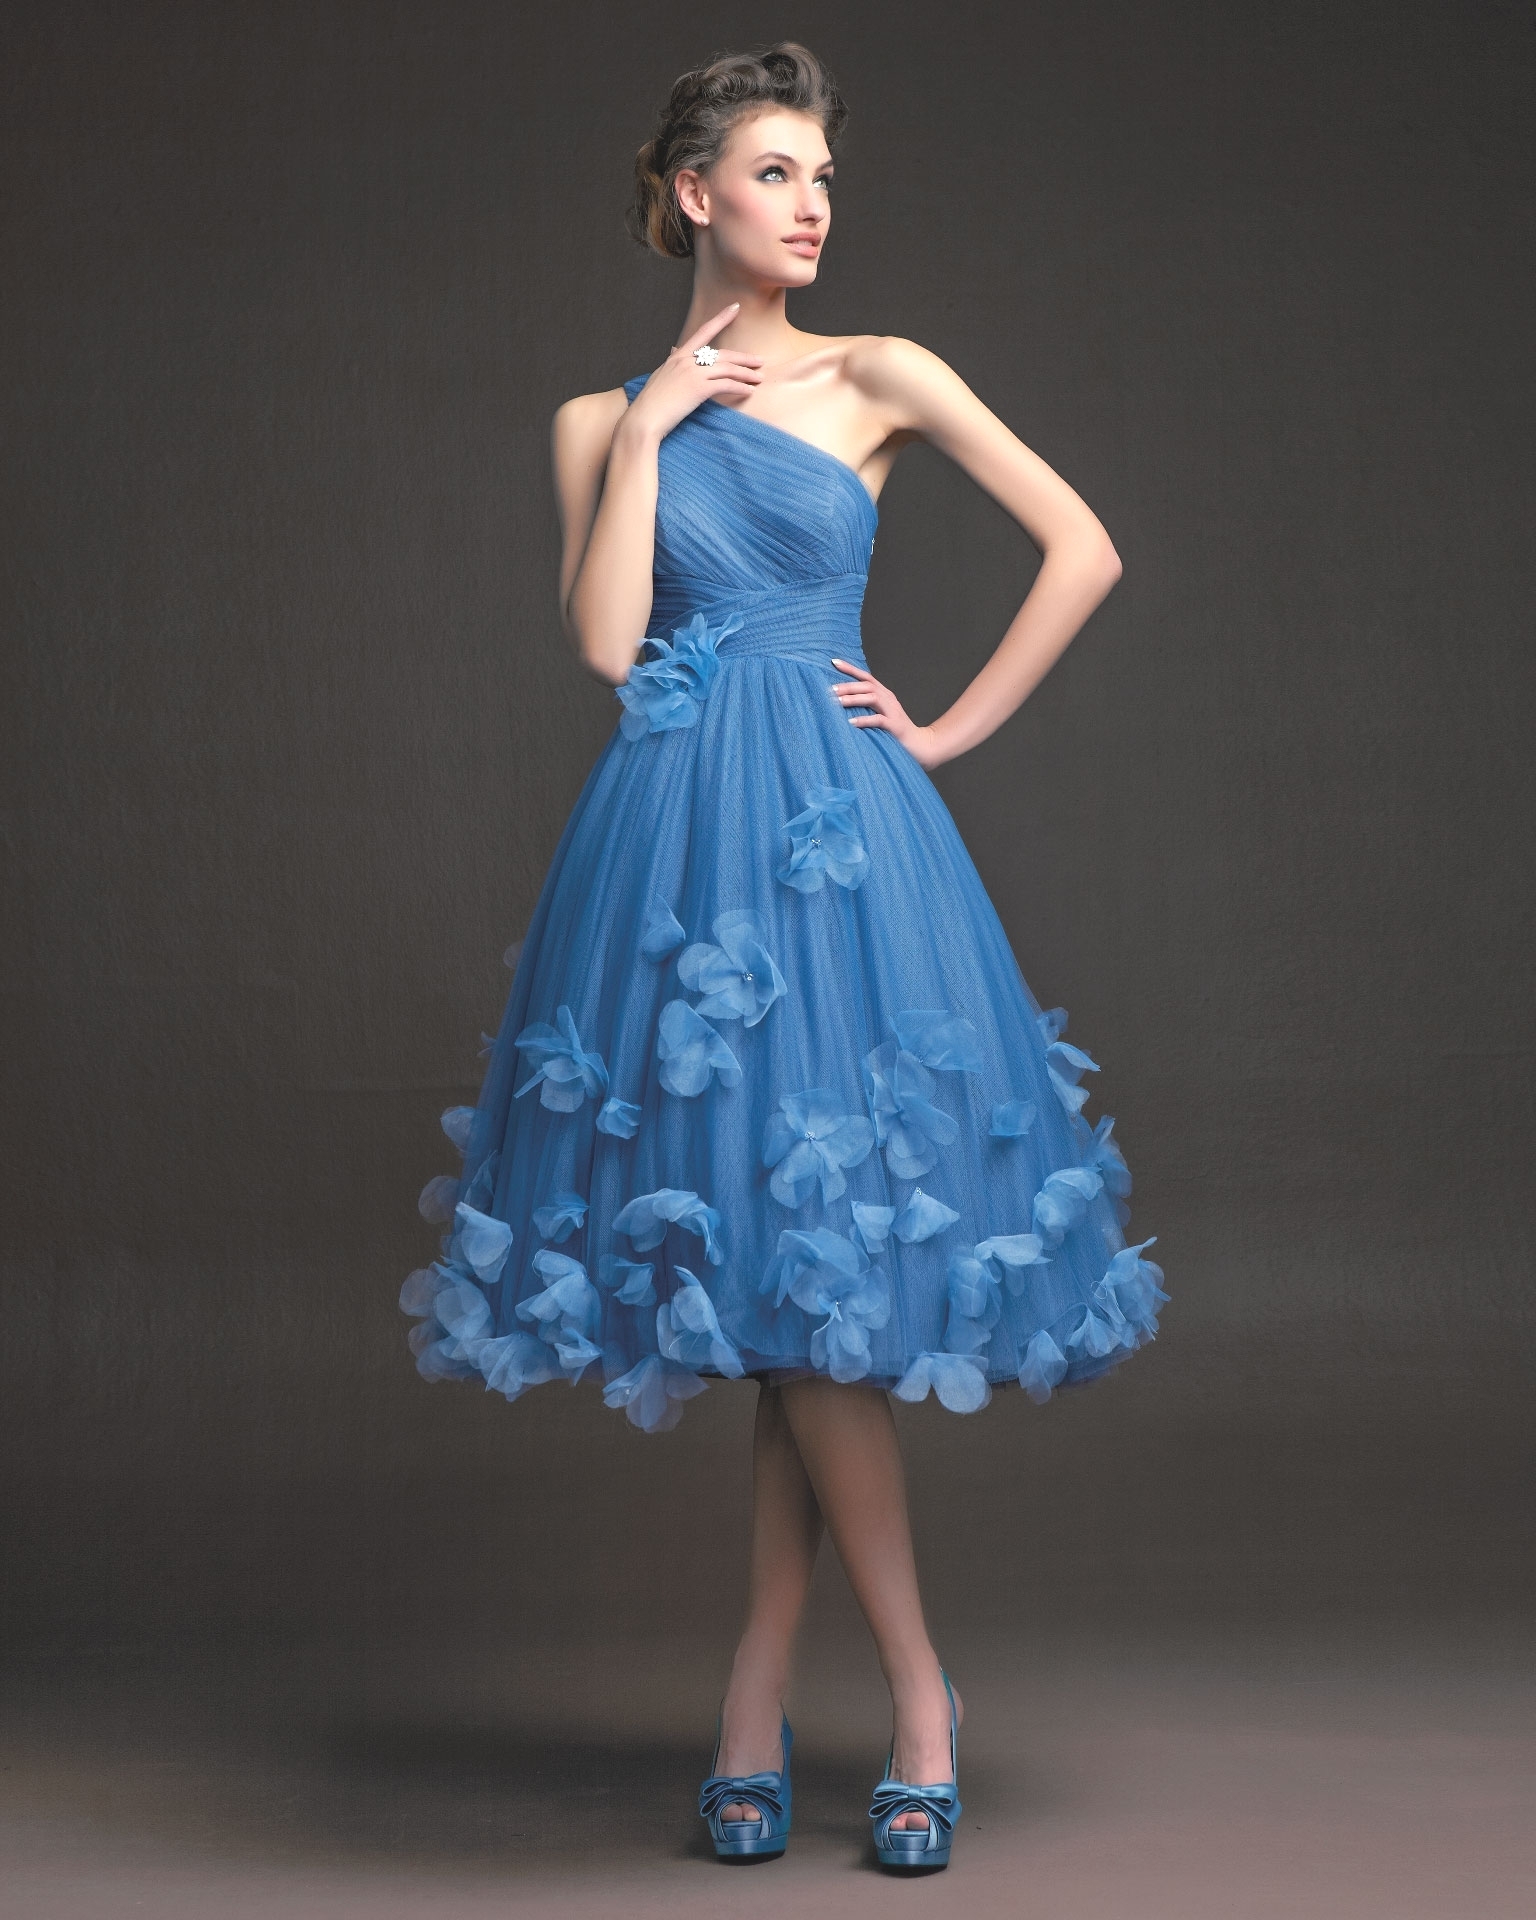 Вечерние платья для настоящих леди или коллекция Aire Barcelona 2014 года, фото № 27